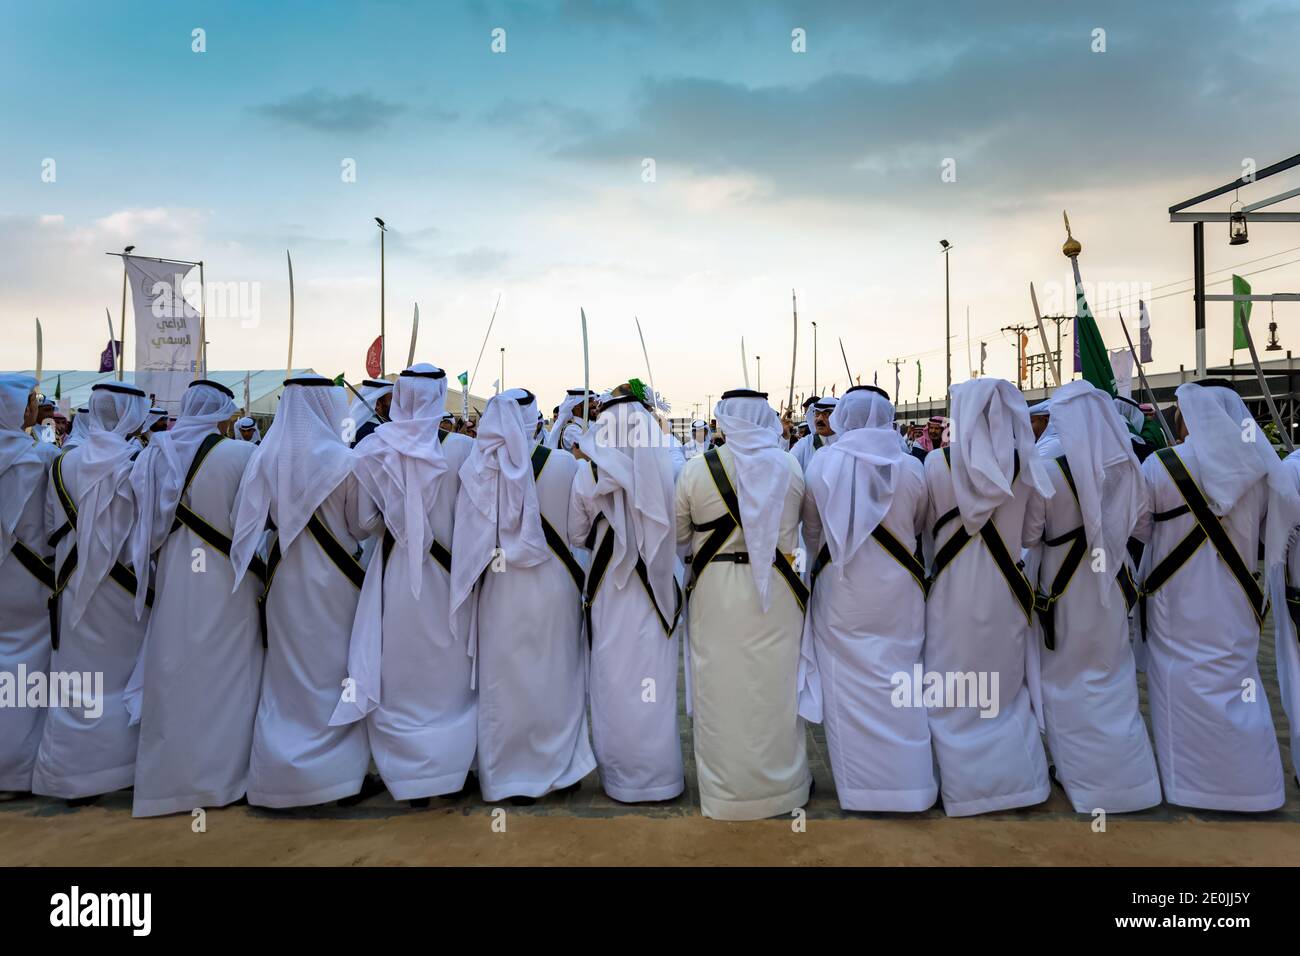 Un groupe d'Arabes saoudiens effectuant la danse traditionnelle saoudienne dans le désert d'Abqaiq Safari Festival Arabie Saoudite 10 janvier 2020. Focalisé sélectif o Banque D'Images